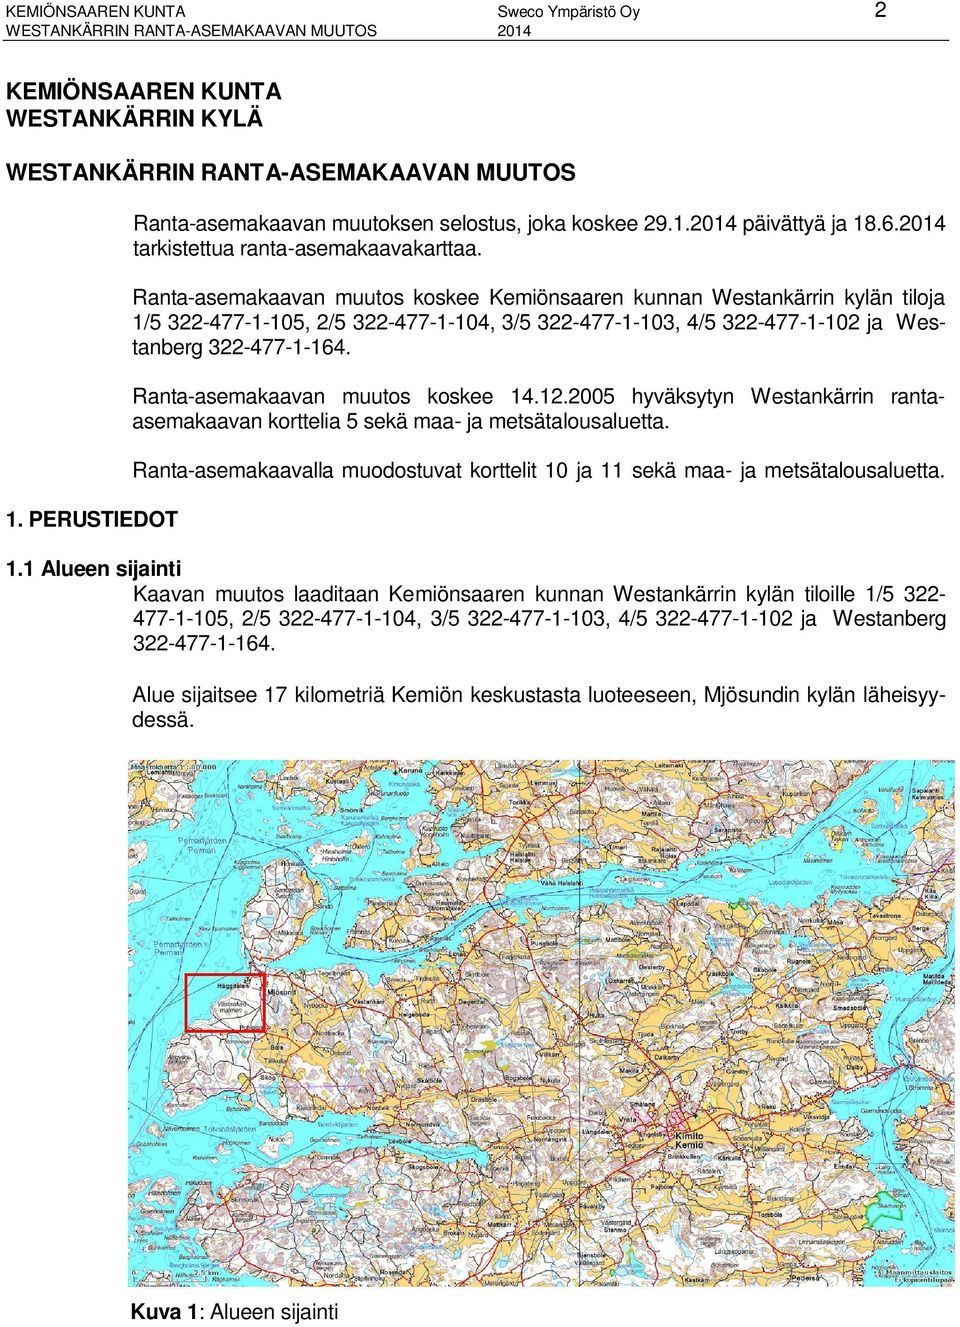 Ranta-asemakaavan muutos koskee Kemiönsaaren kunnan Westankärrin kylän tiloja 1/5 322-477-1-105, 2/5 322-477-1-104, 3/5 322-477-1-103, 4/5 322-477-1-102 ja Westanberg 322-477-1-164.